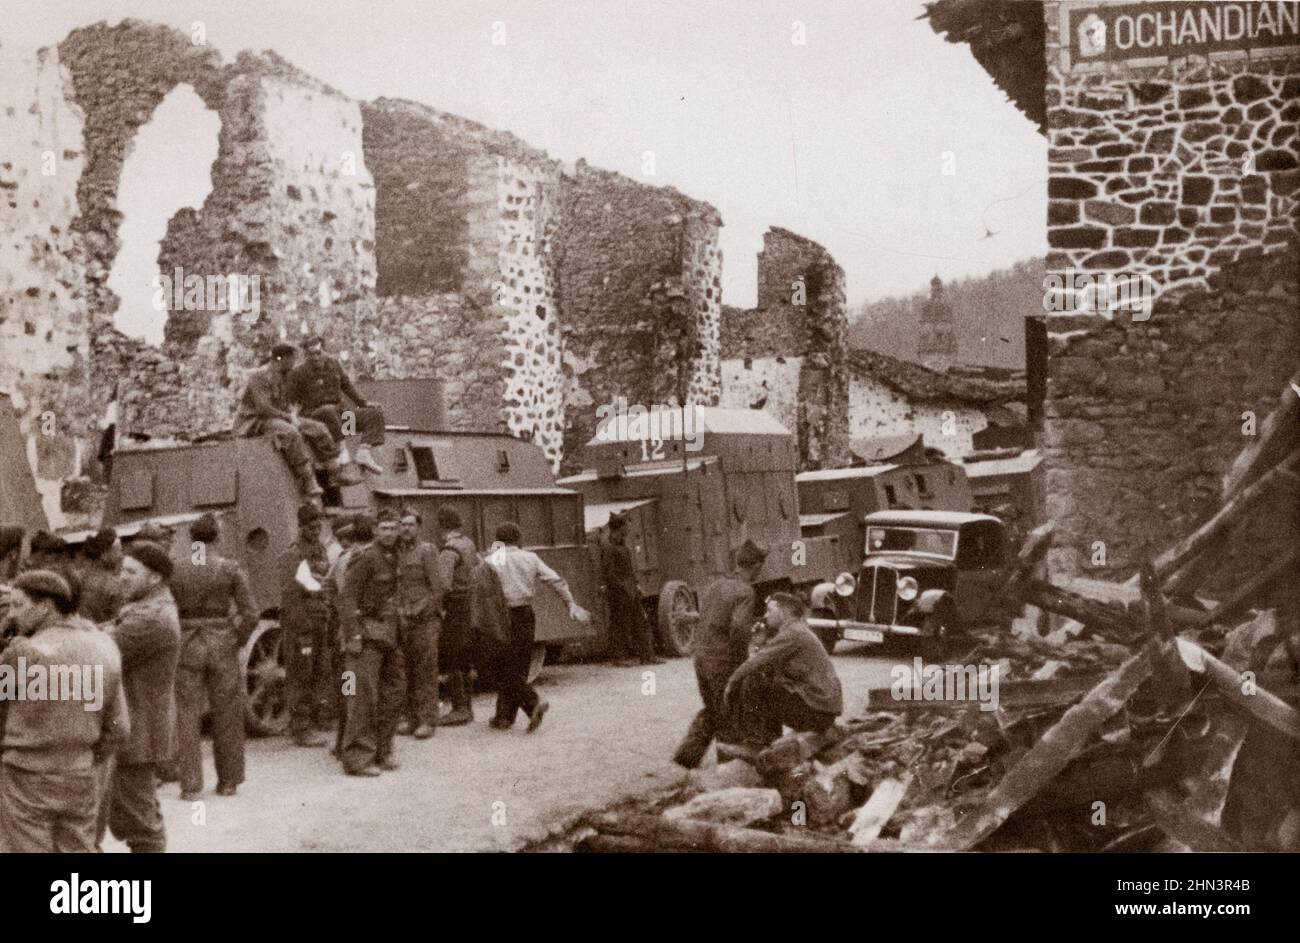 Photo d'archives de la guerre civile espagnole. Troupes et voitures blindées sur le front basque (Ochandian). Espagne. Avril 1937 Banque D'Images